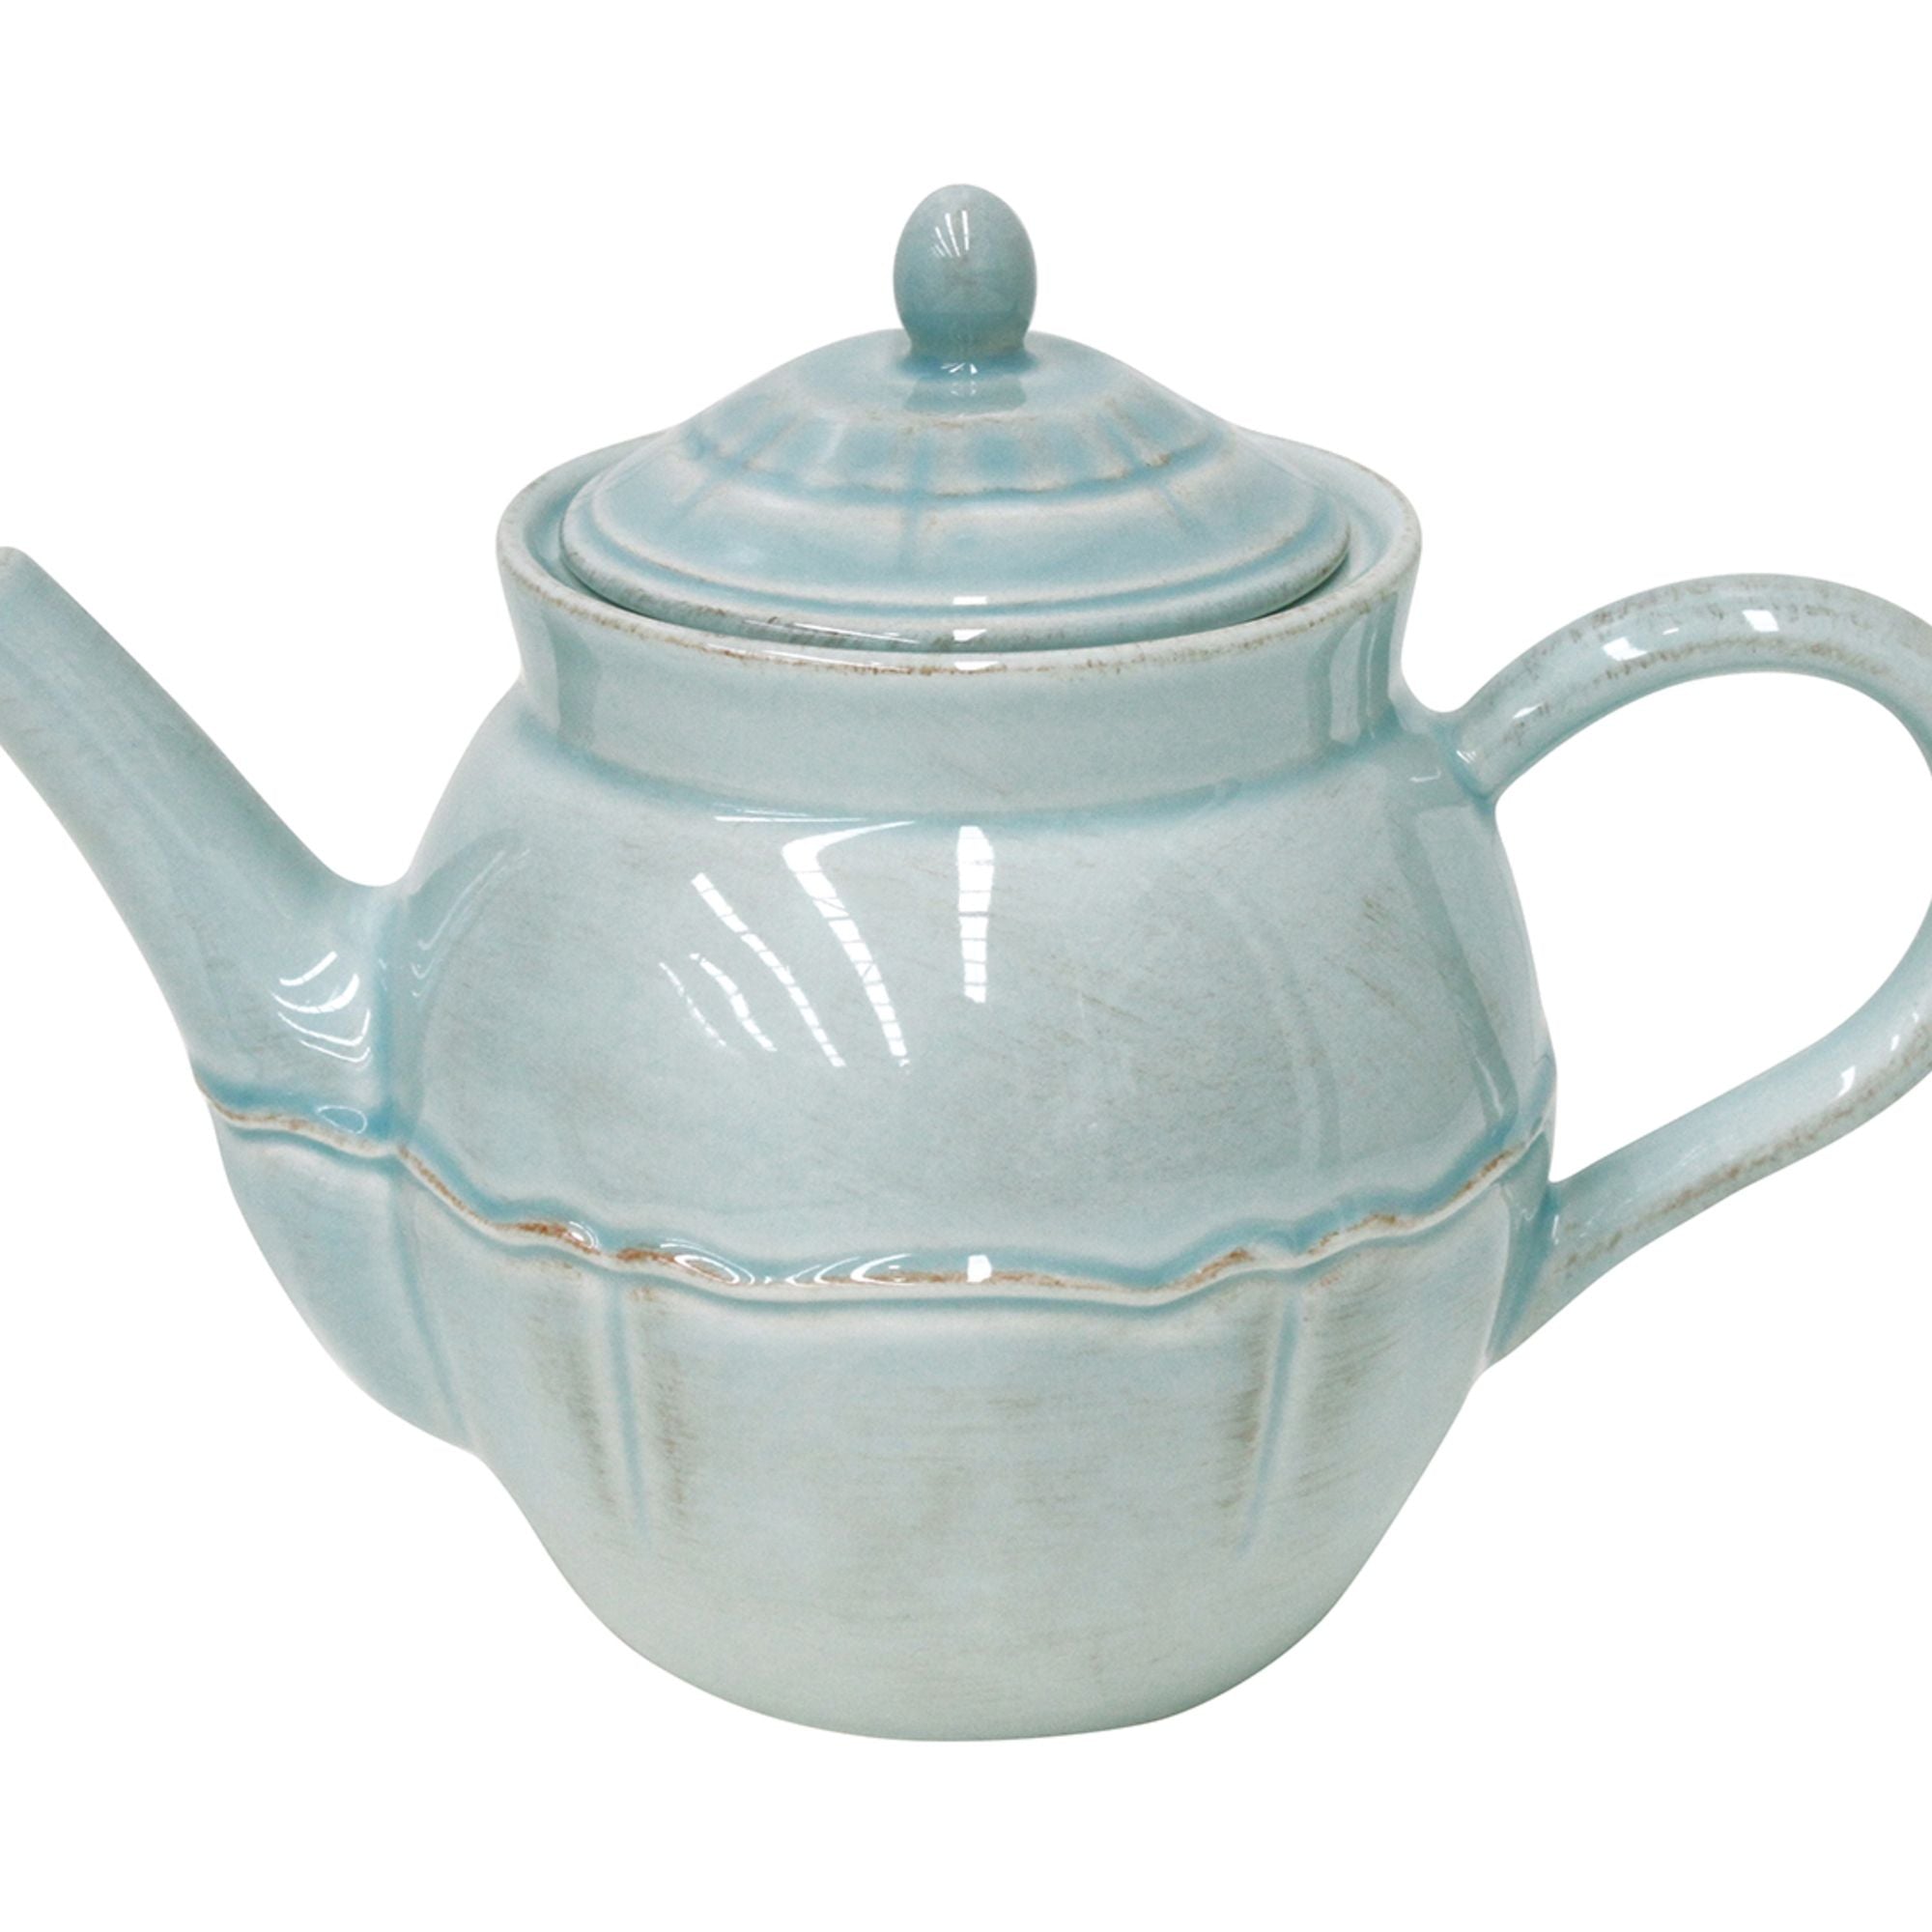 Alentejo Tea Pot 51 oz. Turquoise